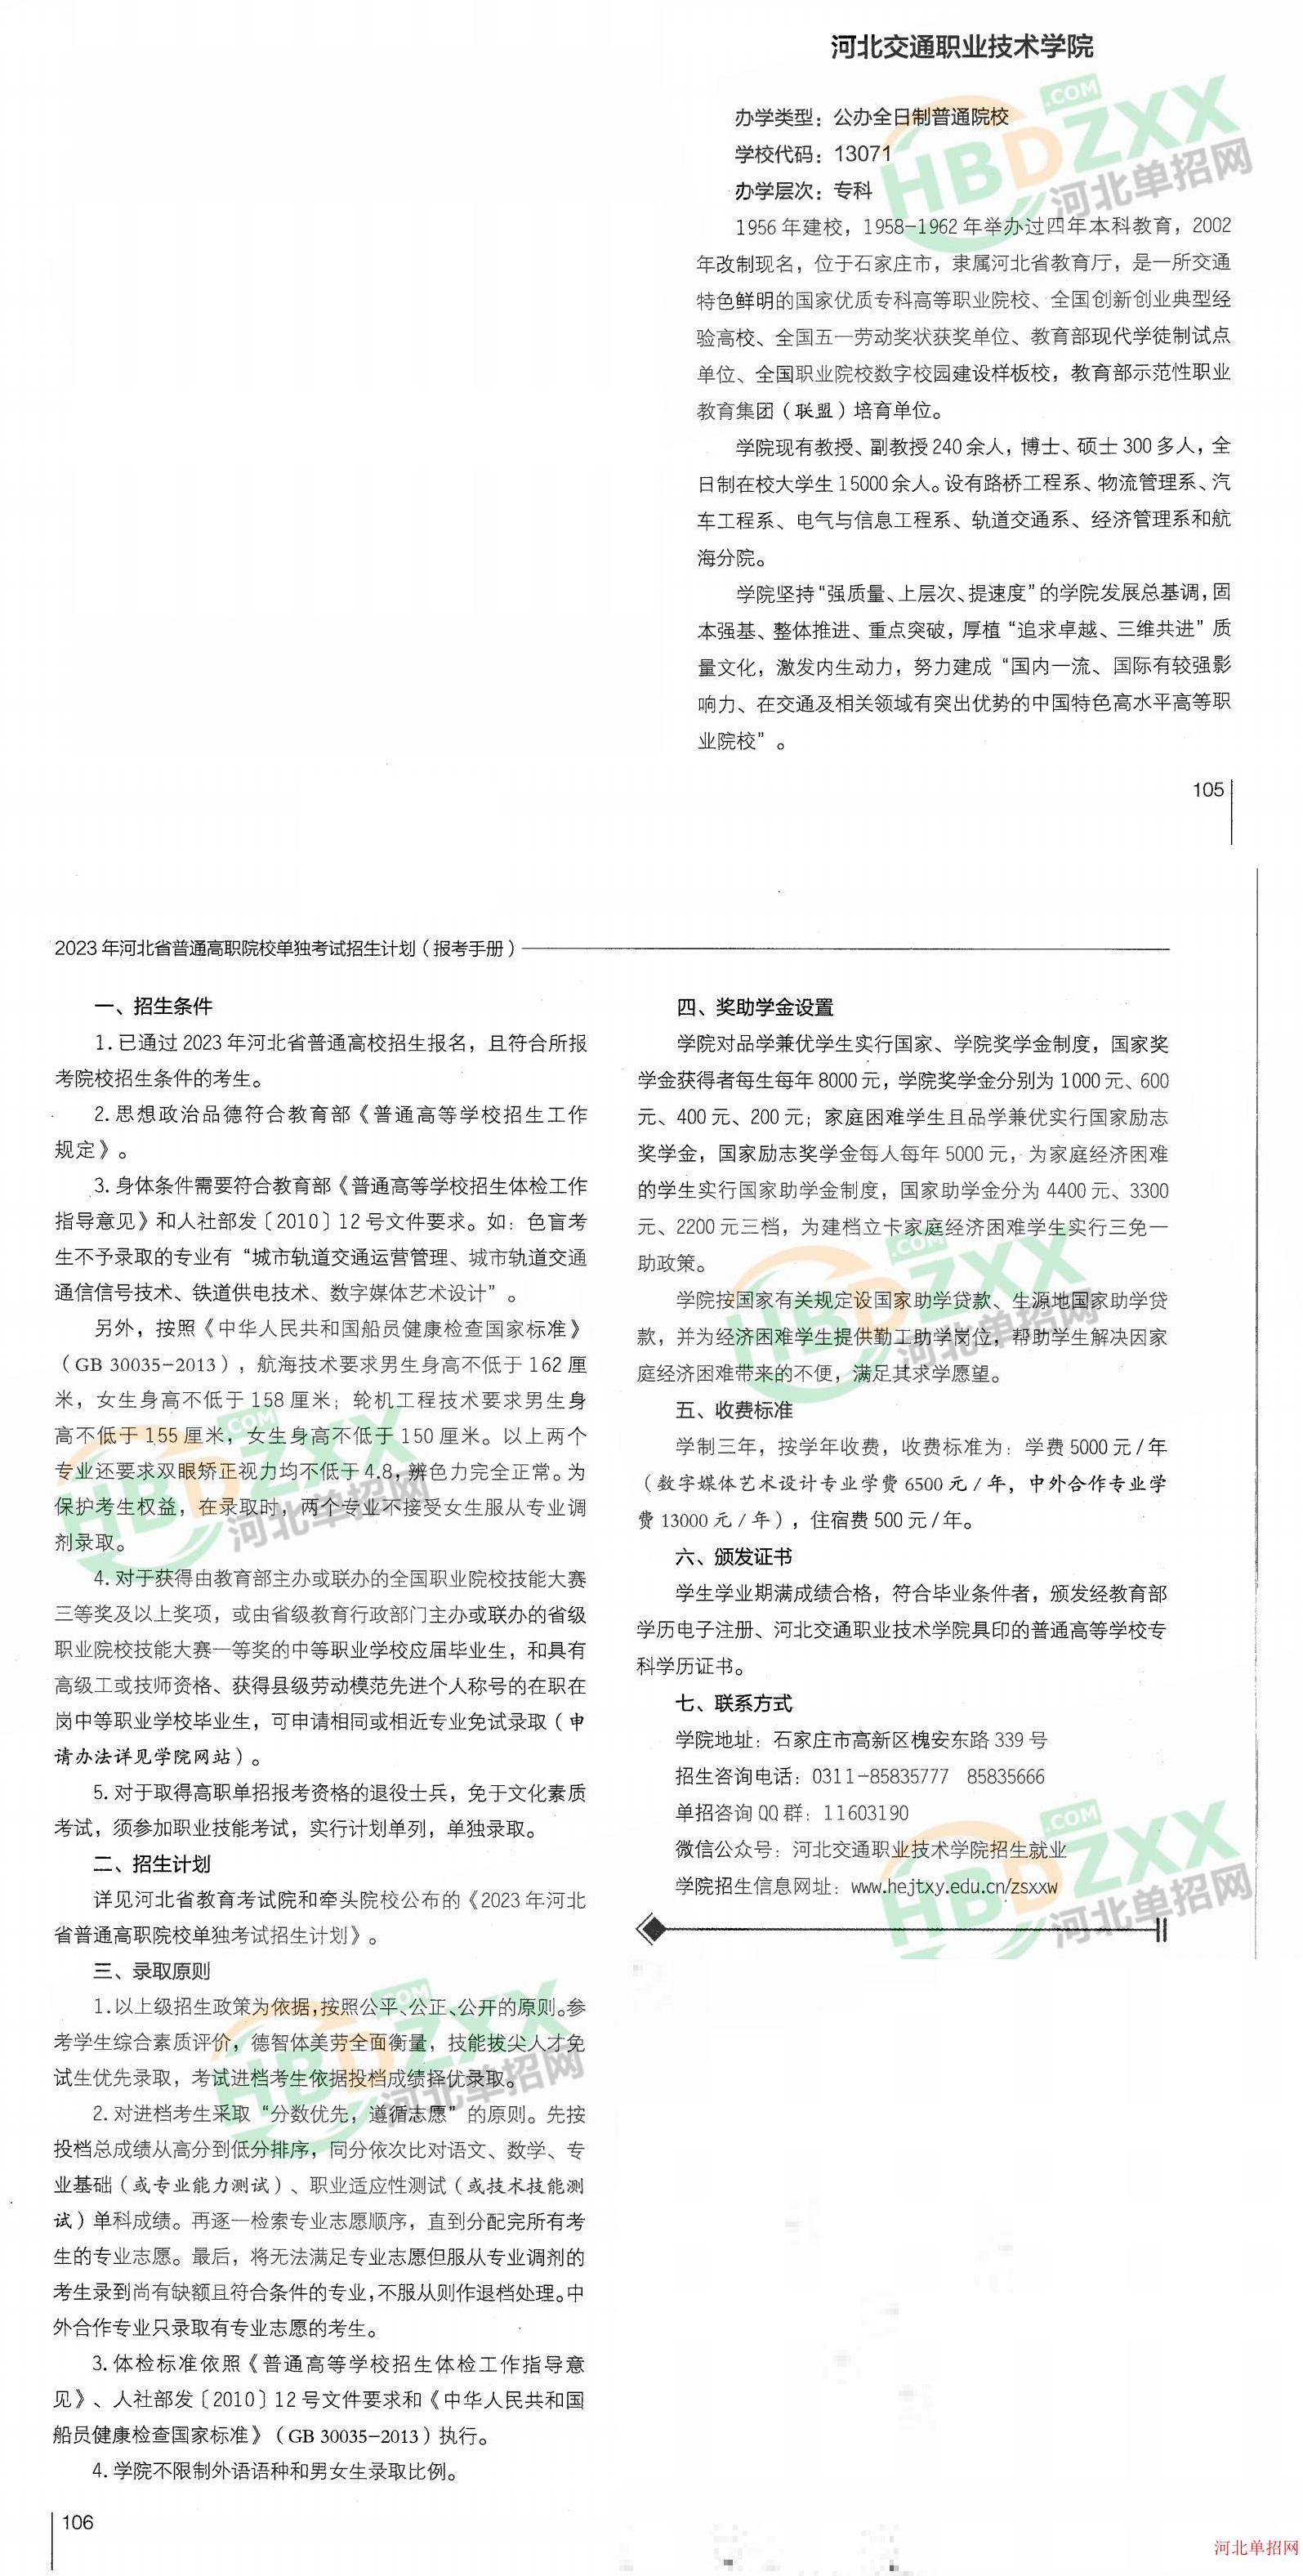 河北交通职业技术学院2023年单招招生简章 图2